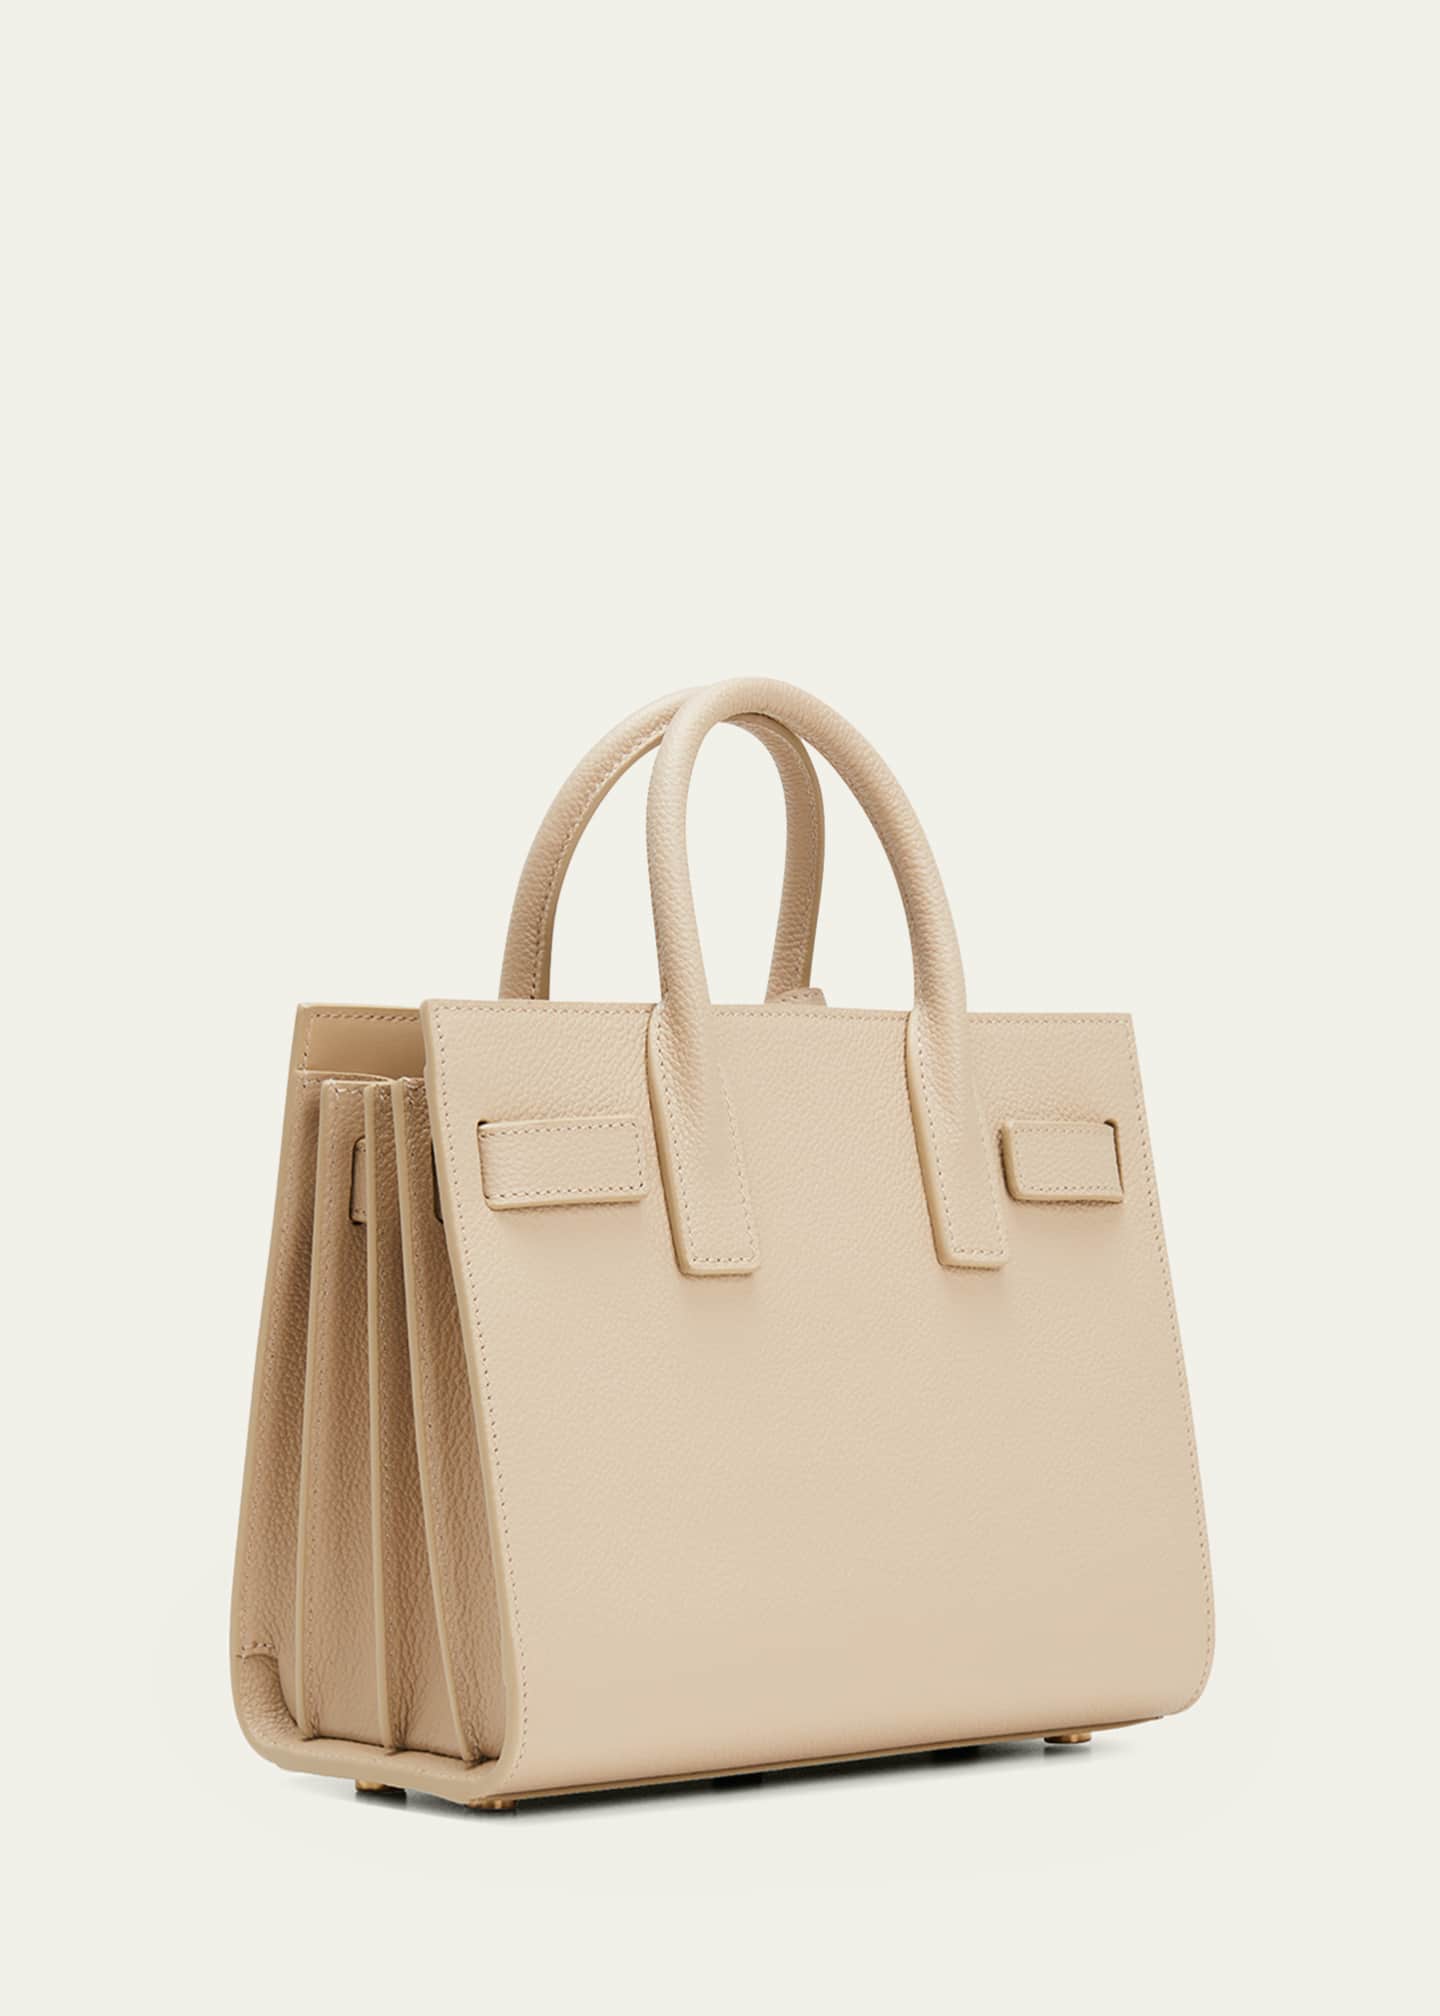 Women's Sac de Jour Handbag Collection, Saint Laurent